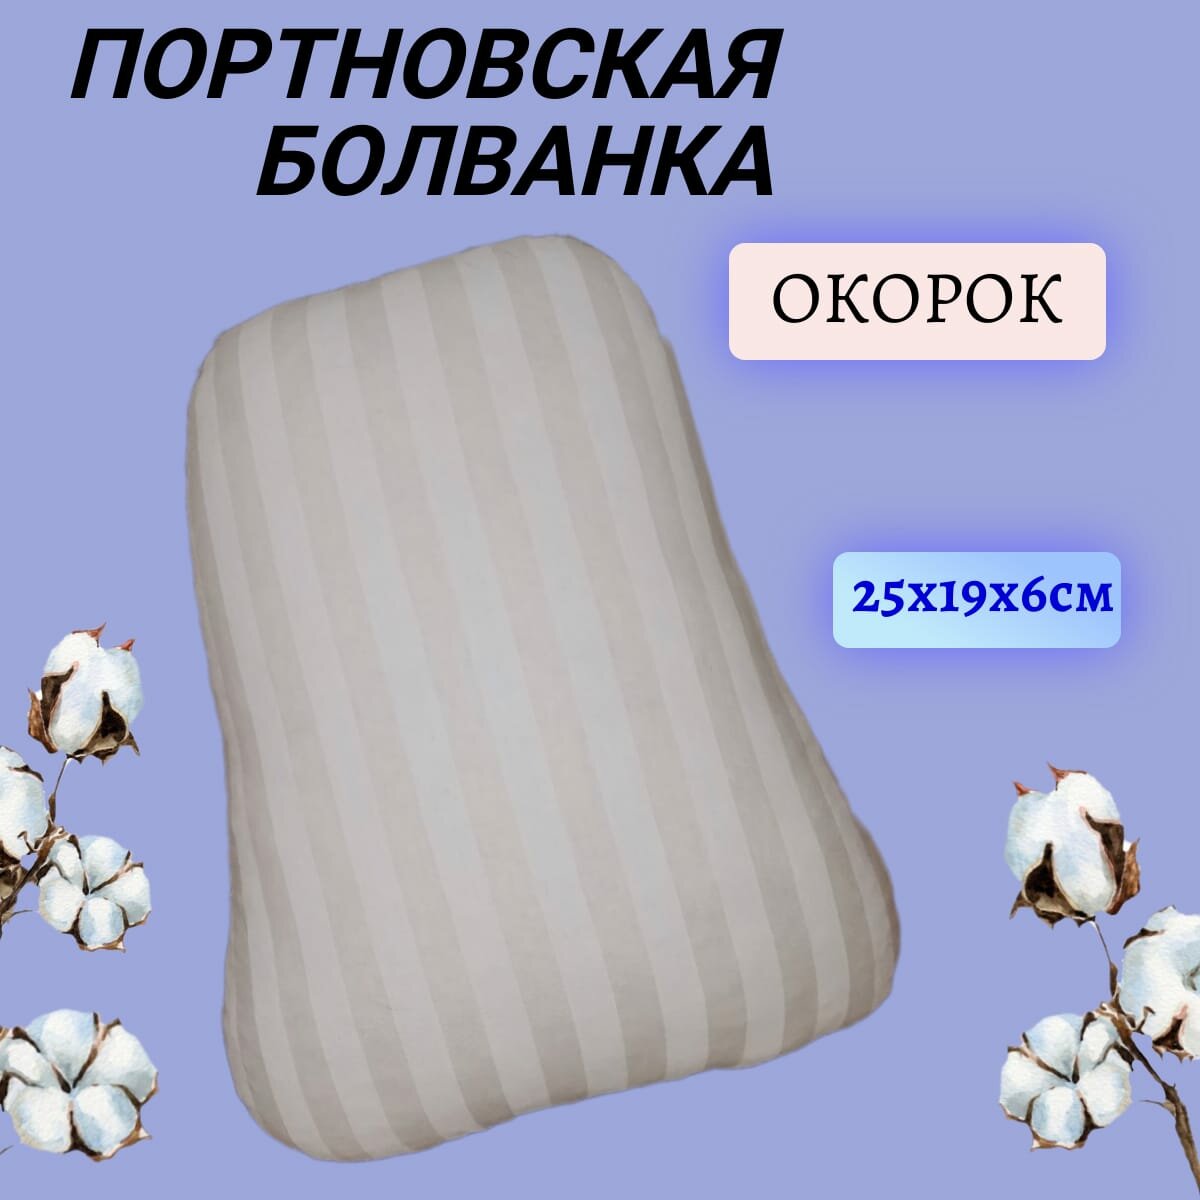 Подушка "Окорок", портновская колодка 25 х 19 х 6 см, болванка для ВТО